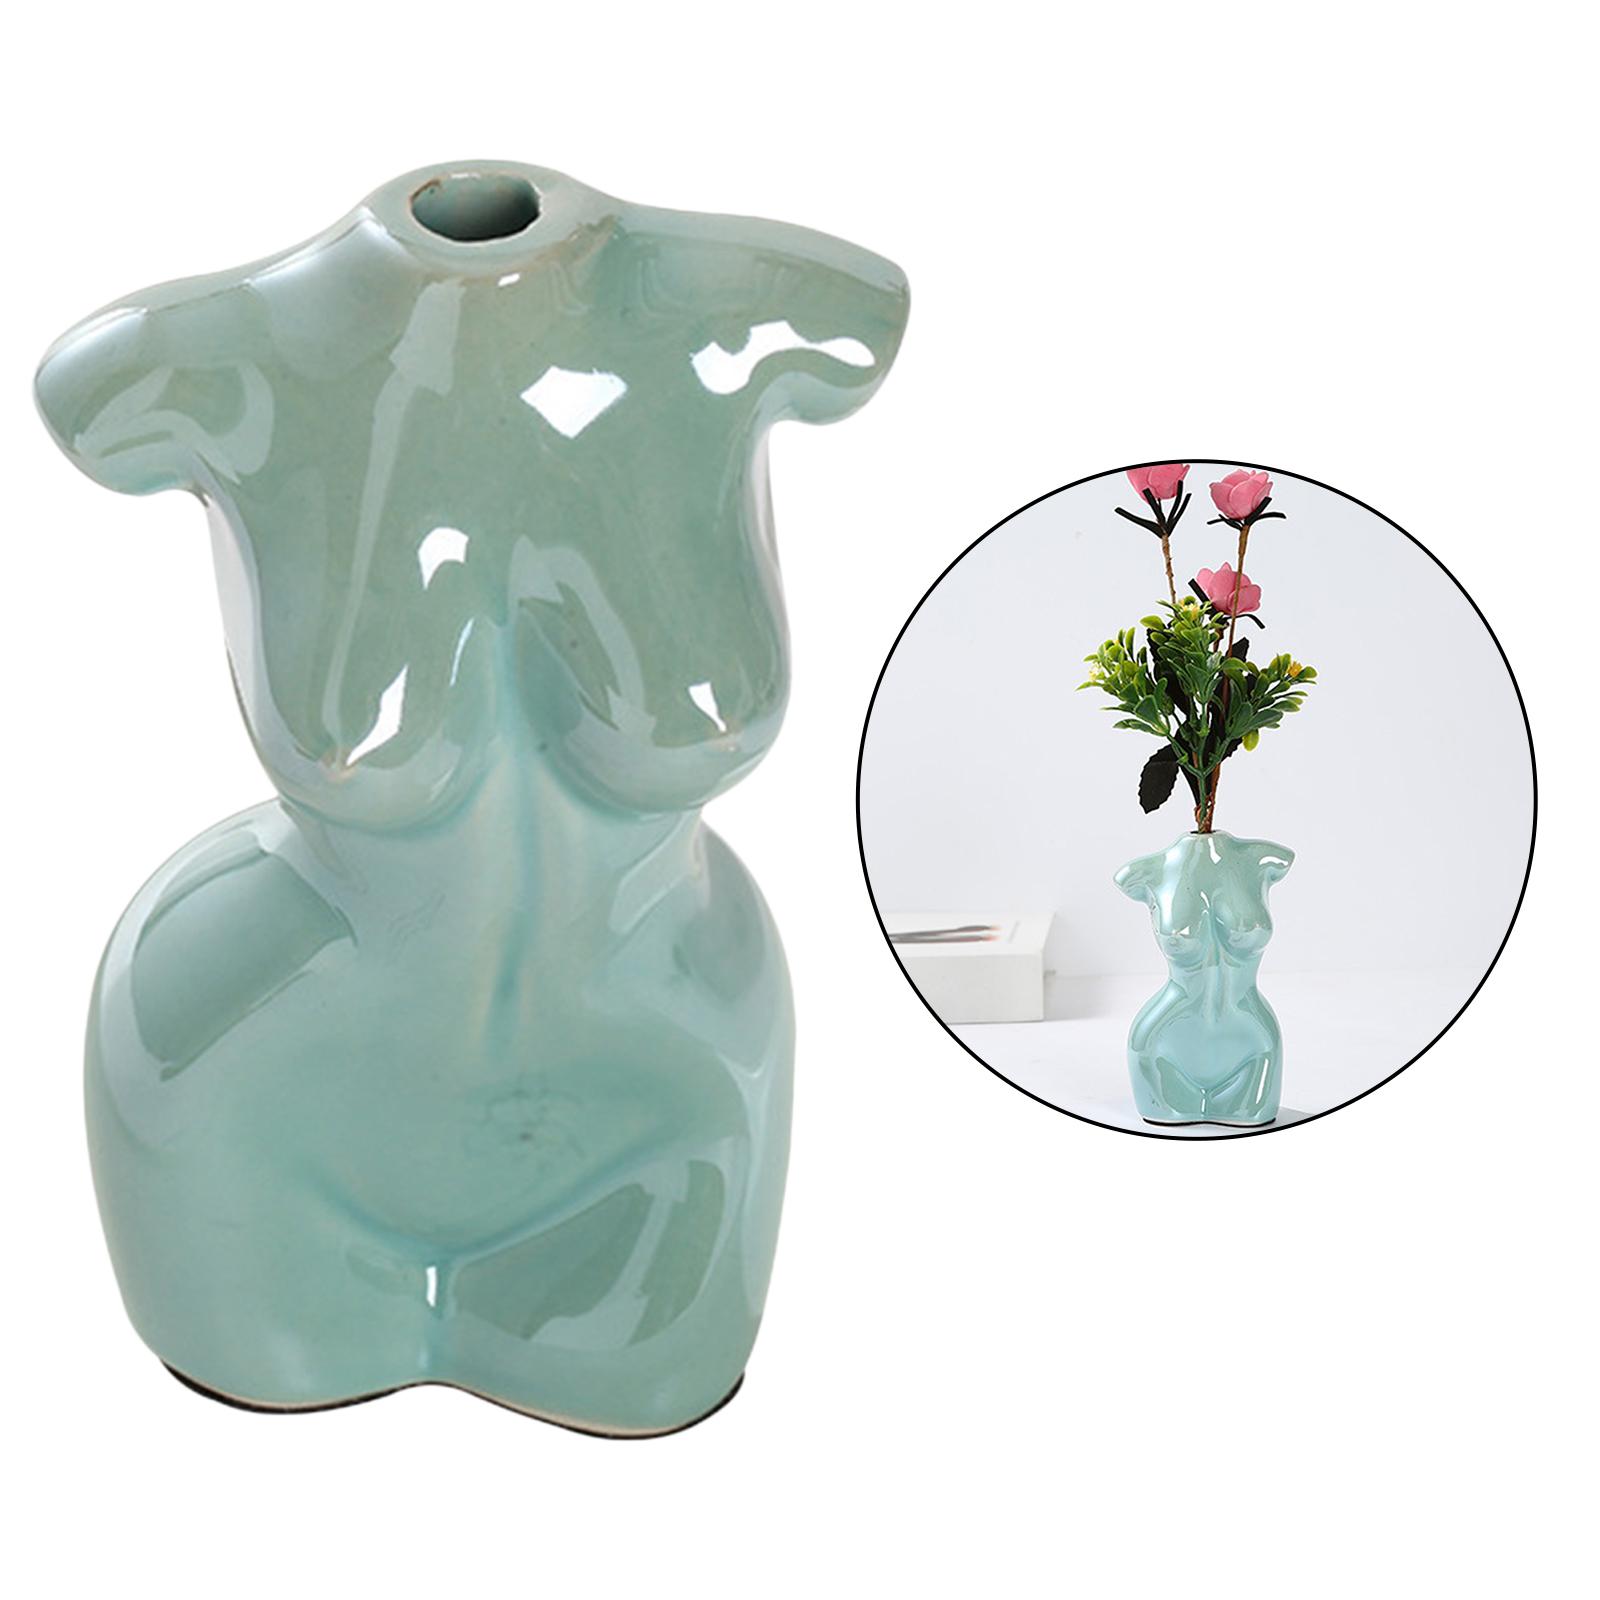 Female Body Vase Art Ceramic Home Tabletop Decor Flower Pot Vase Cyan